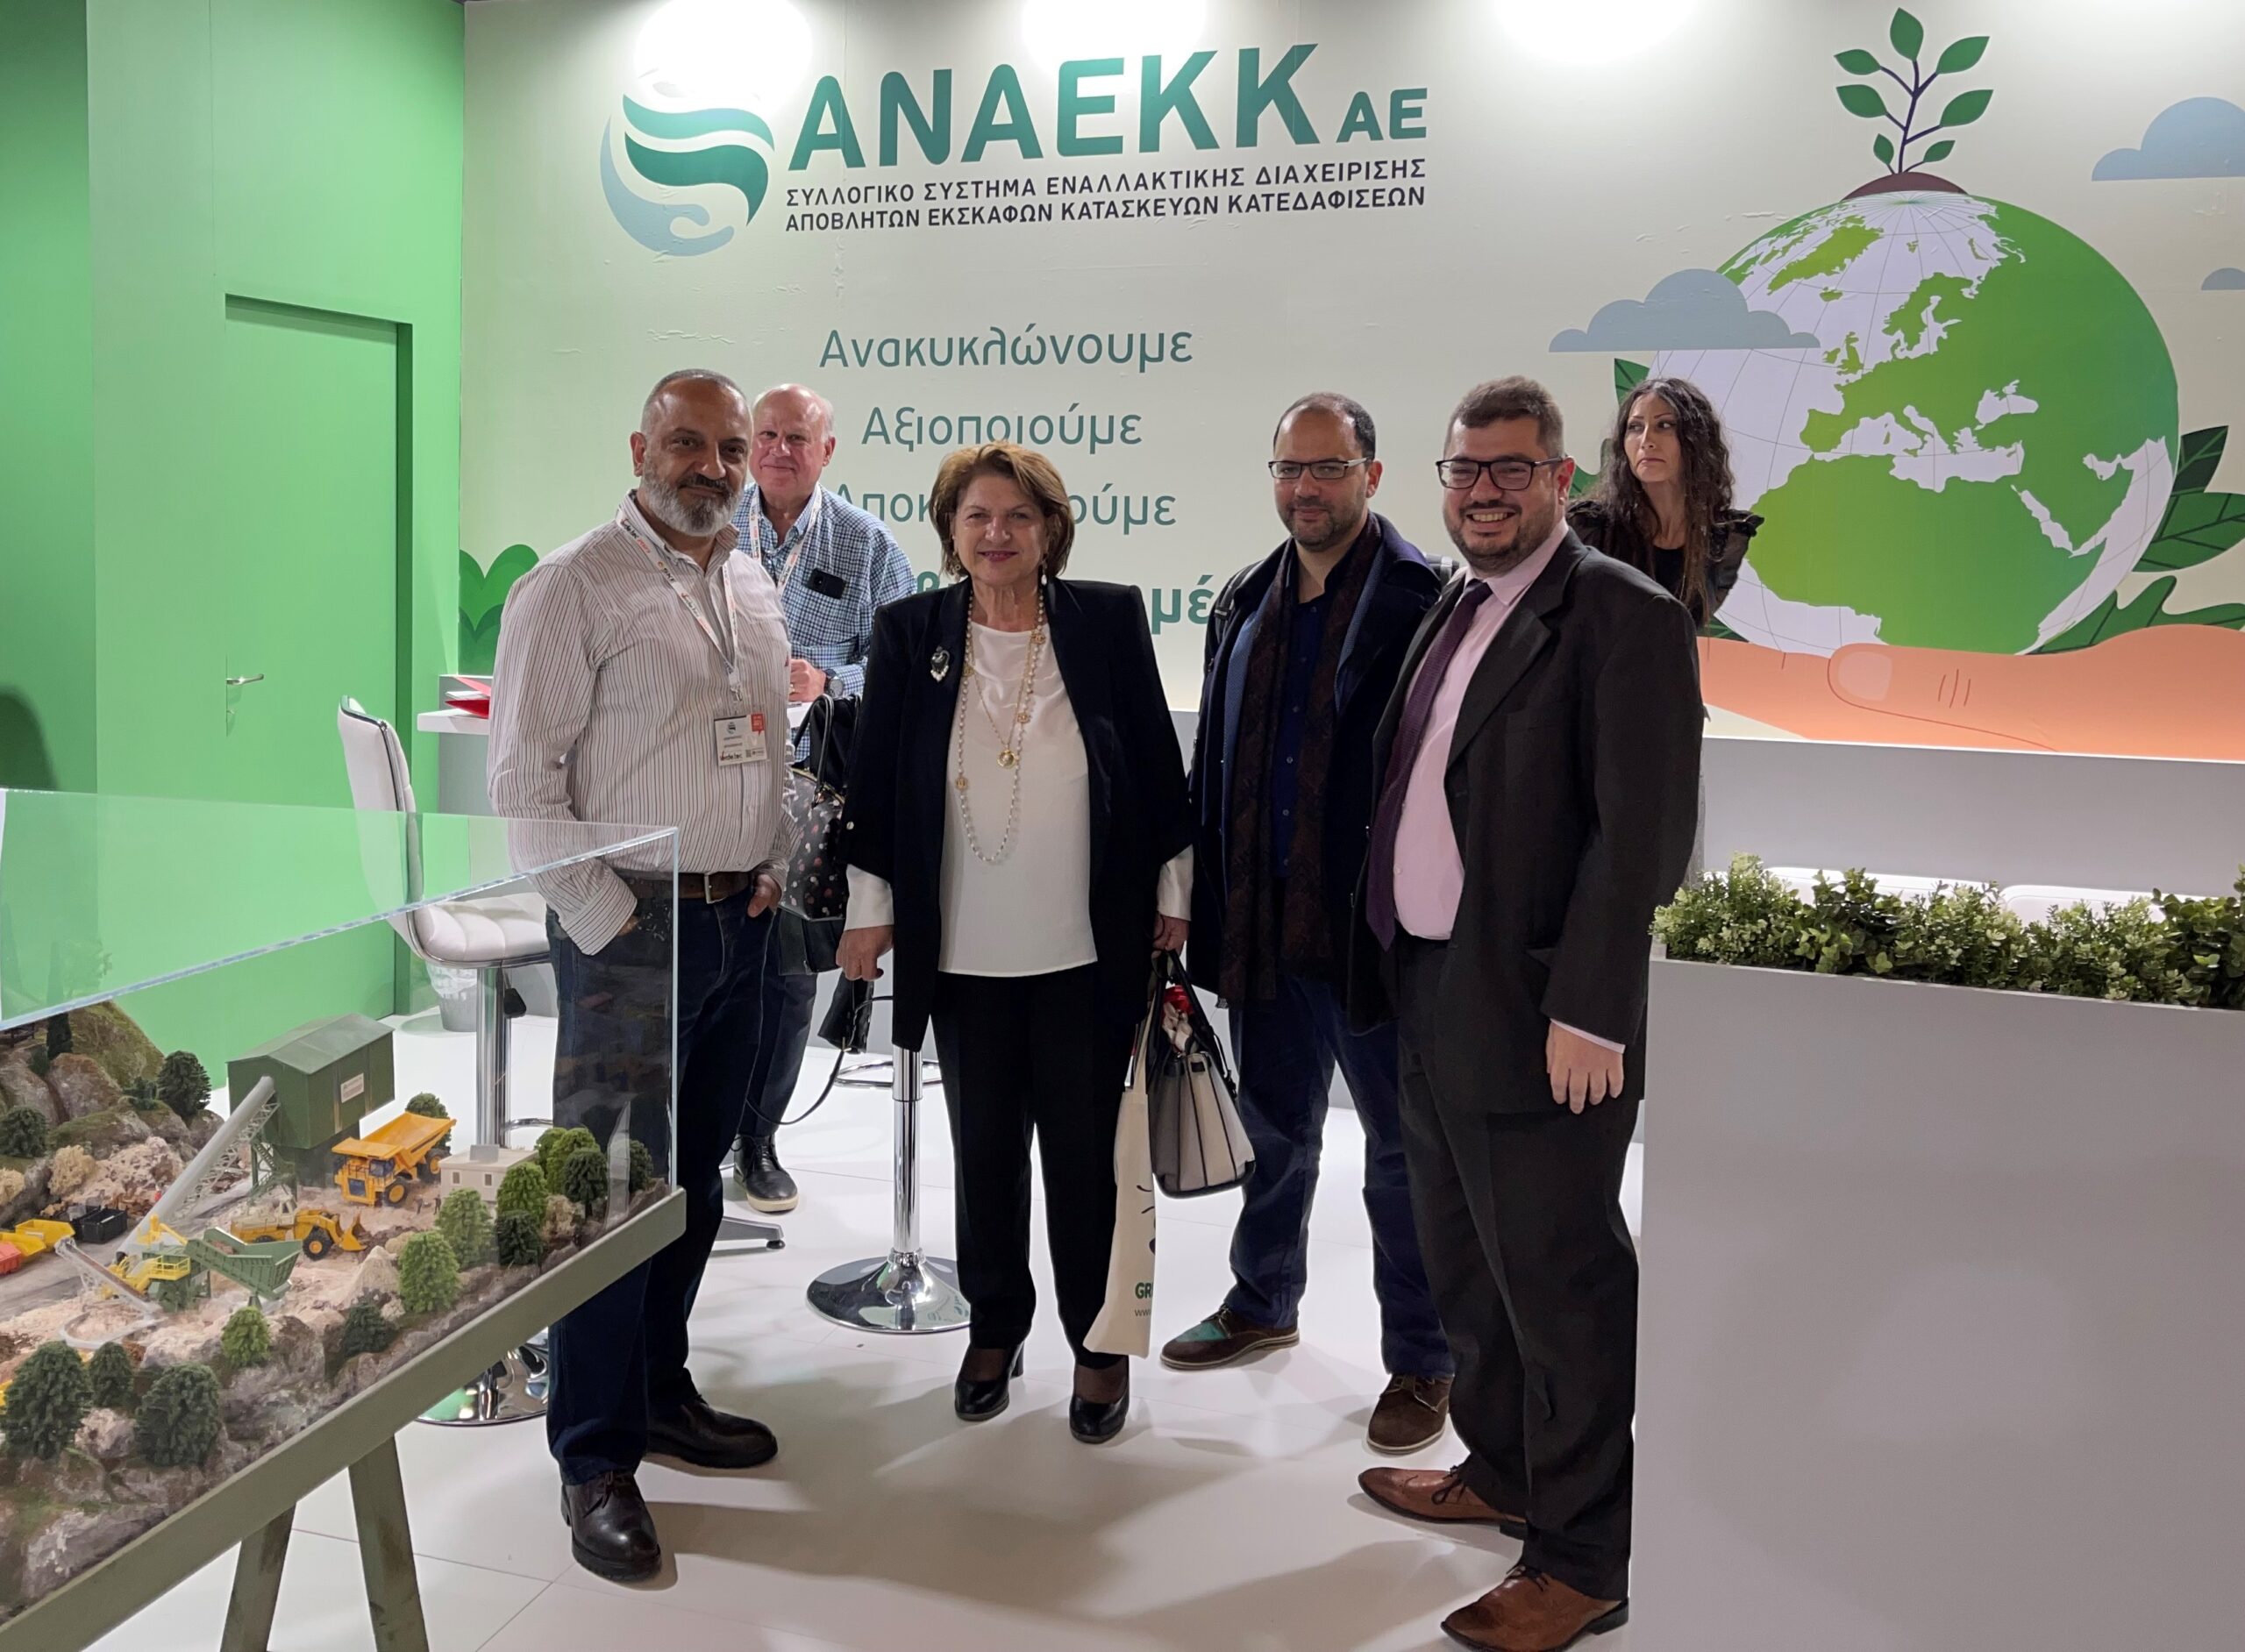 Η καθηγήτρια ΕΜΠ και Πρόεδρος της Επιτροπής των Green Greek Awards κ. Μ. Λοϊζίδου, ο Γενικός Γραμματέας ΕΕΔΣΑ Δρ. Κ. Μουστάκας, ο Δρ. Δ. Μαλάμης και στελέχη της ΑΝΑΕΚΚ